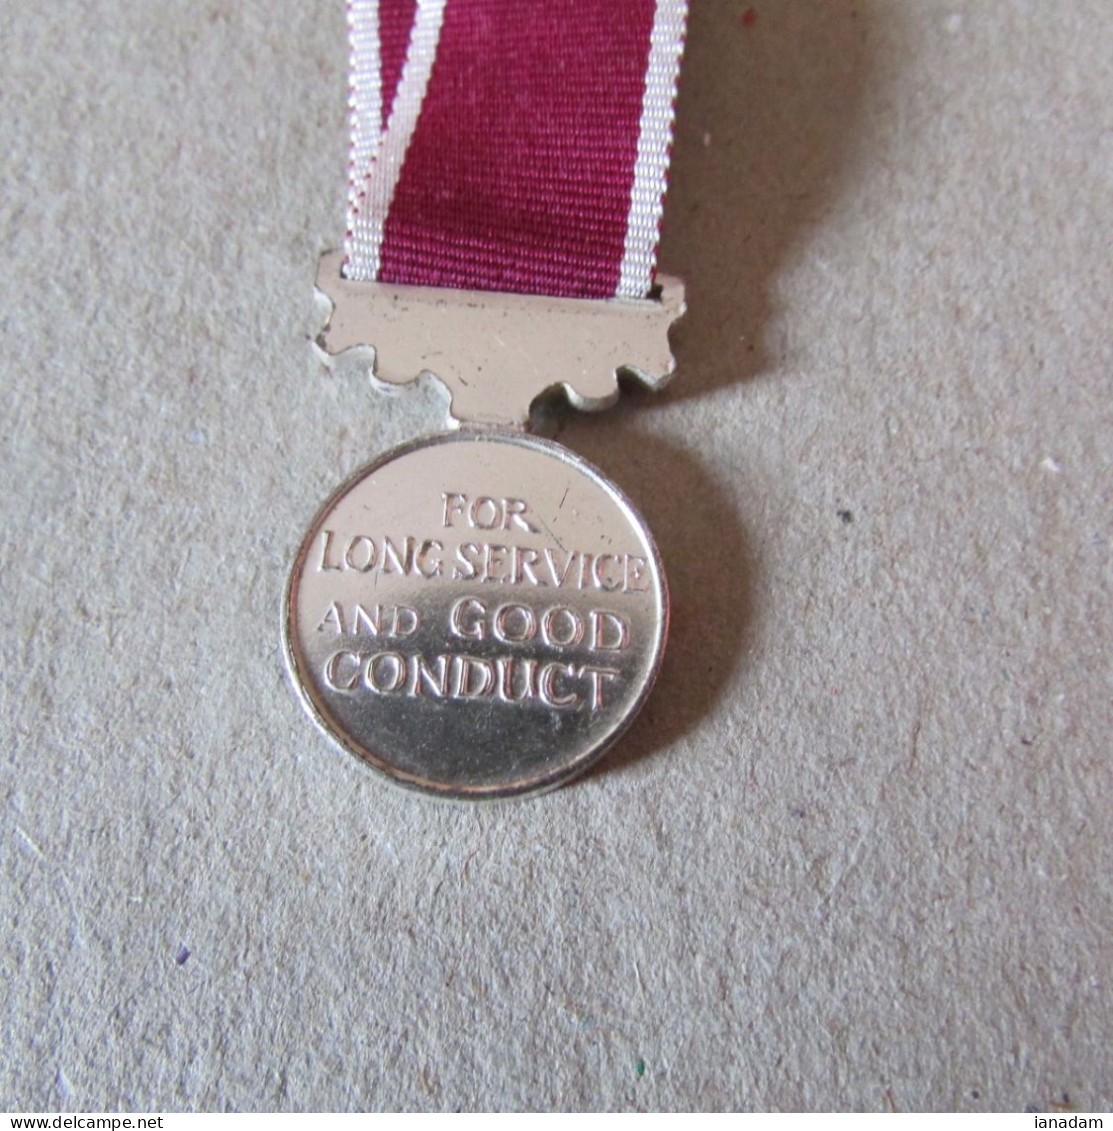 Miniature British LSGC Medal - Grossbritannien